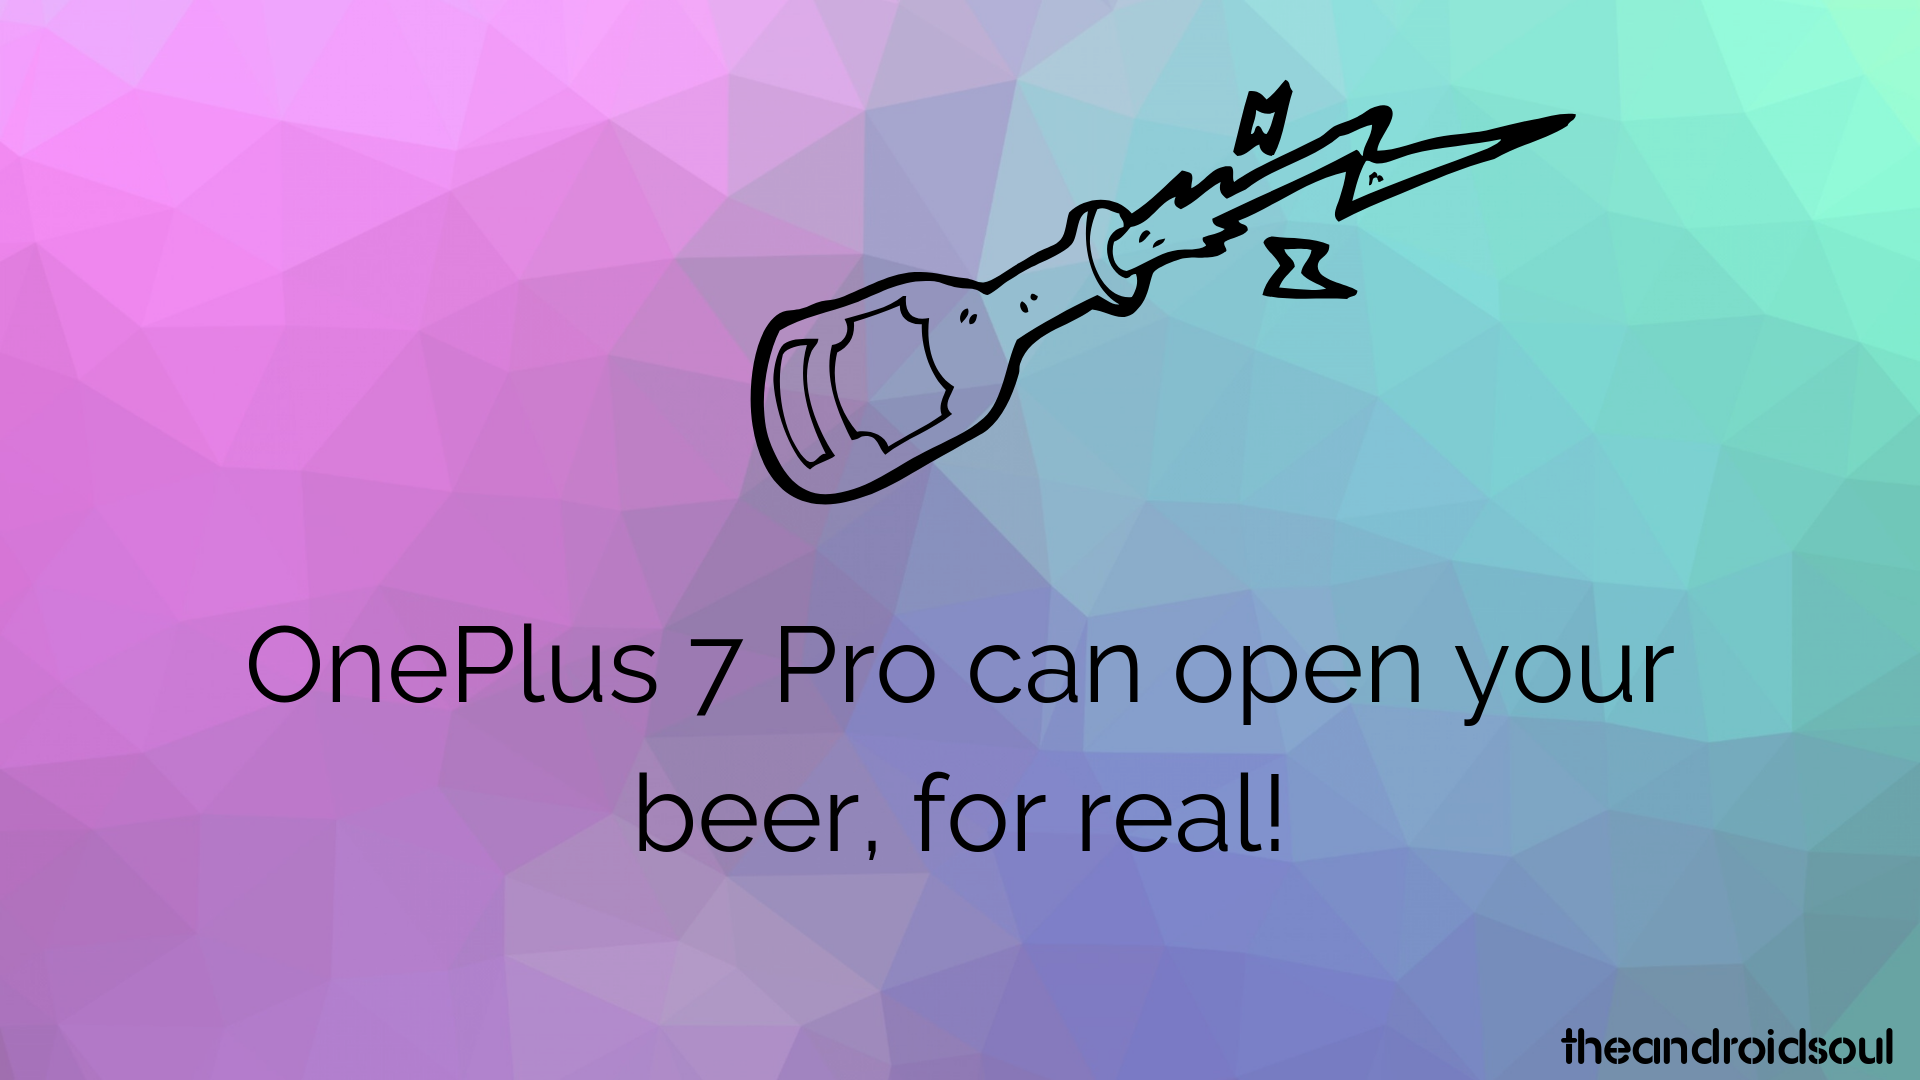 ¡OnePlus 7 Pro puede abrir tu cerveza, de verdad!